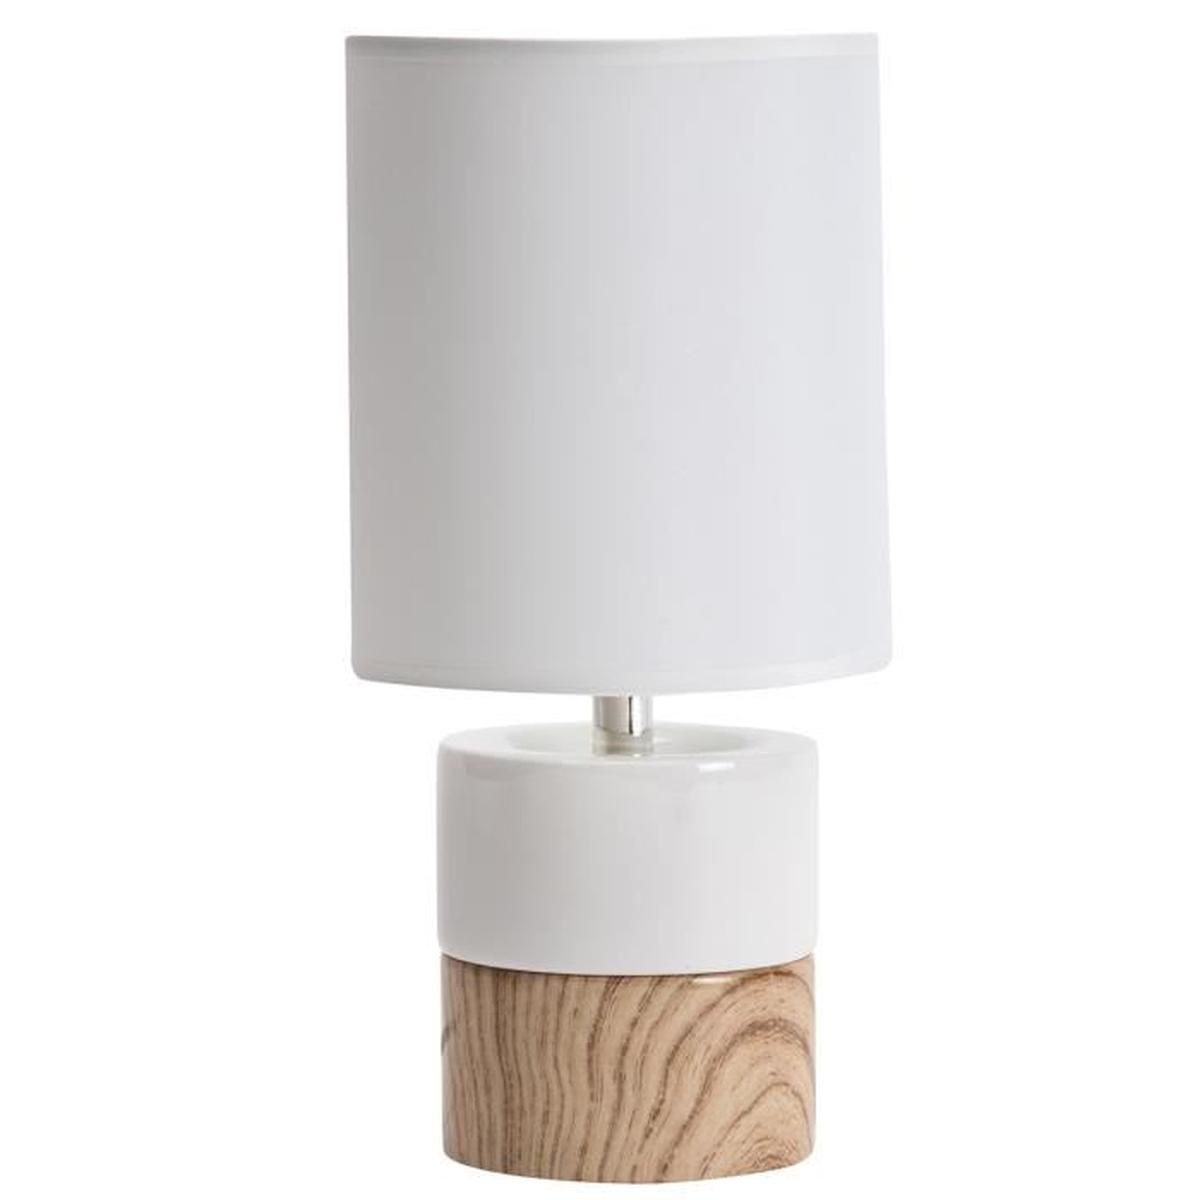 Lampe De
 Lampe de chevet design ceramique blanche et imitation bois